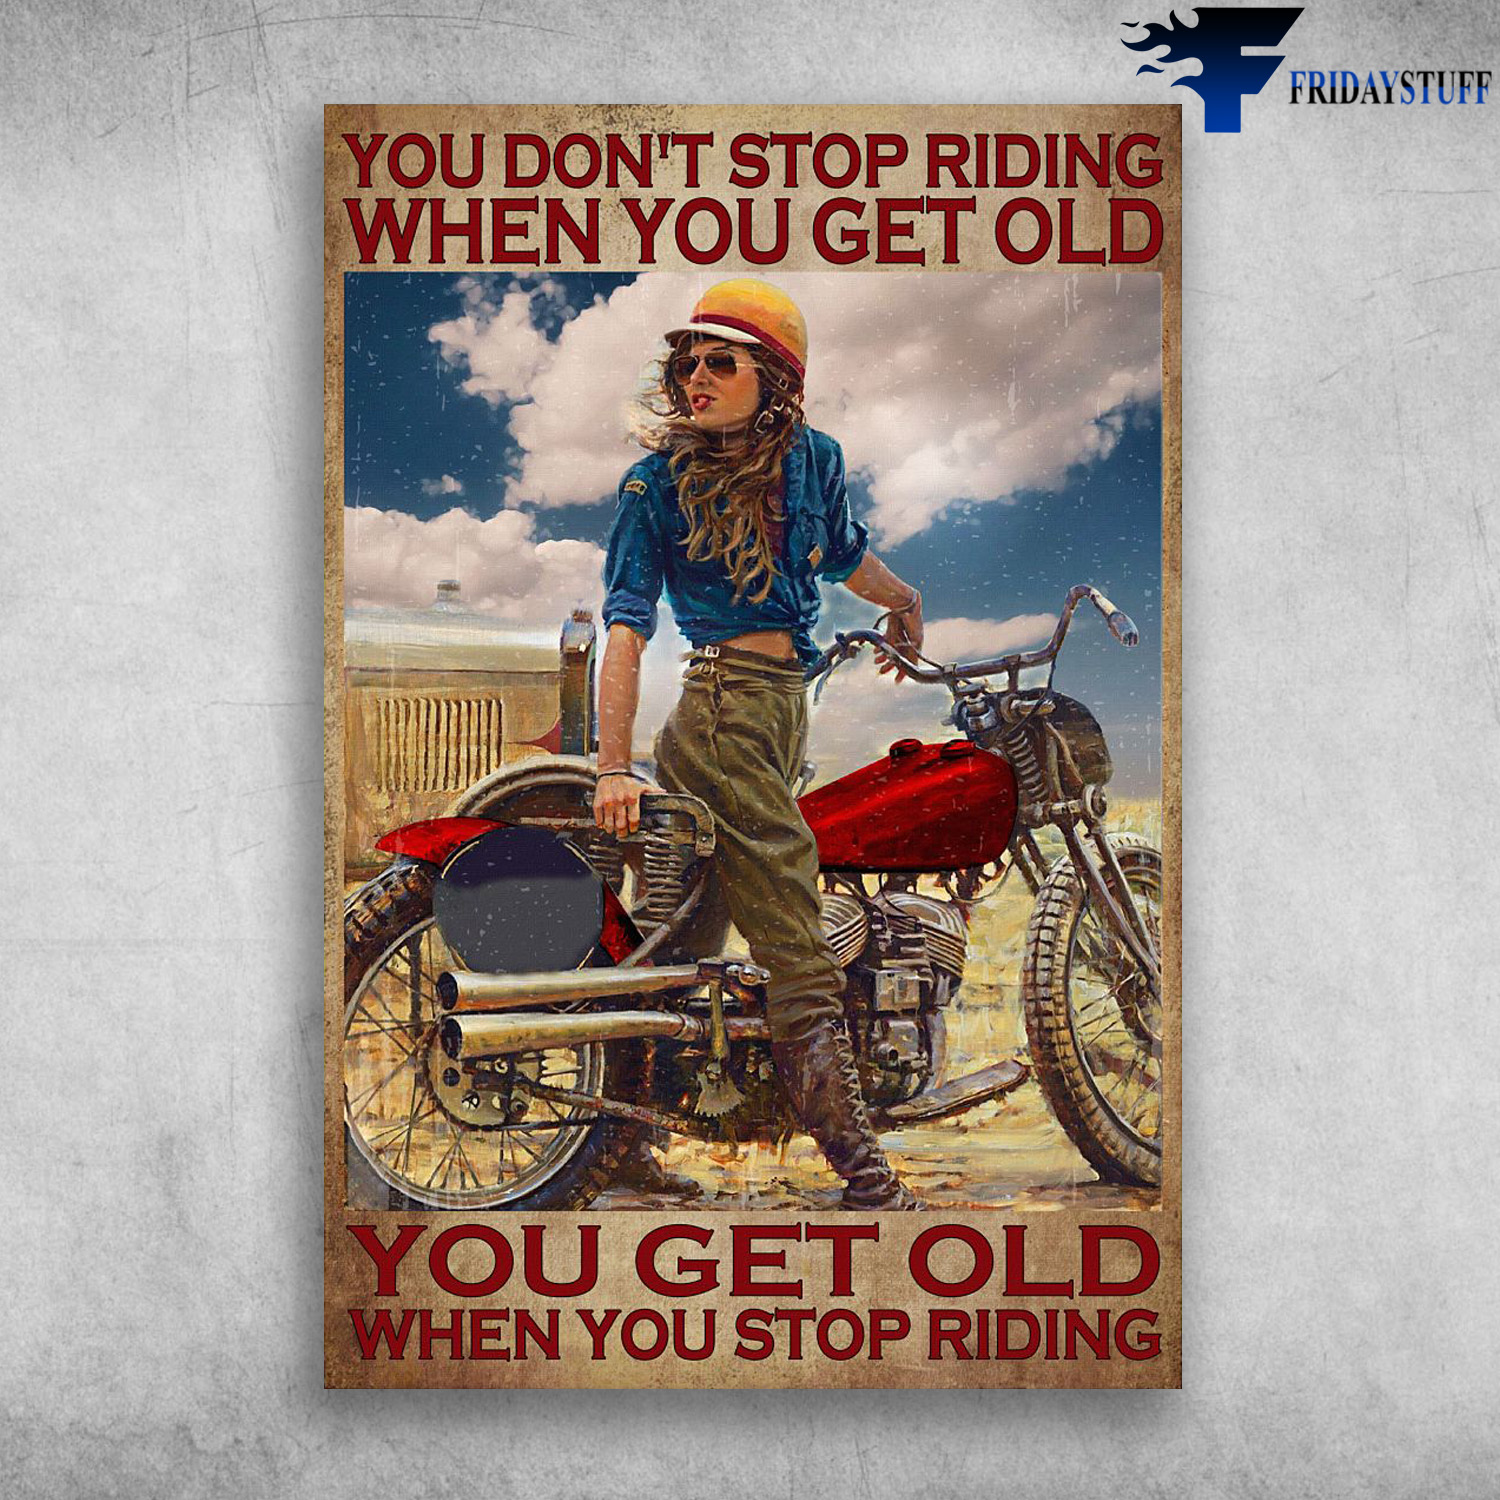 Girl Ridinag Motorbike - You Don't Stop Riding When You Get Old, You Get Old When You Stop Riding